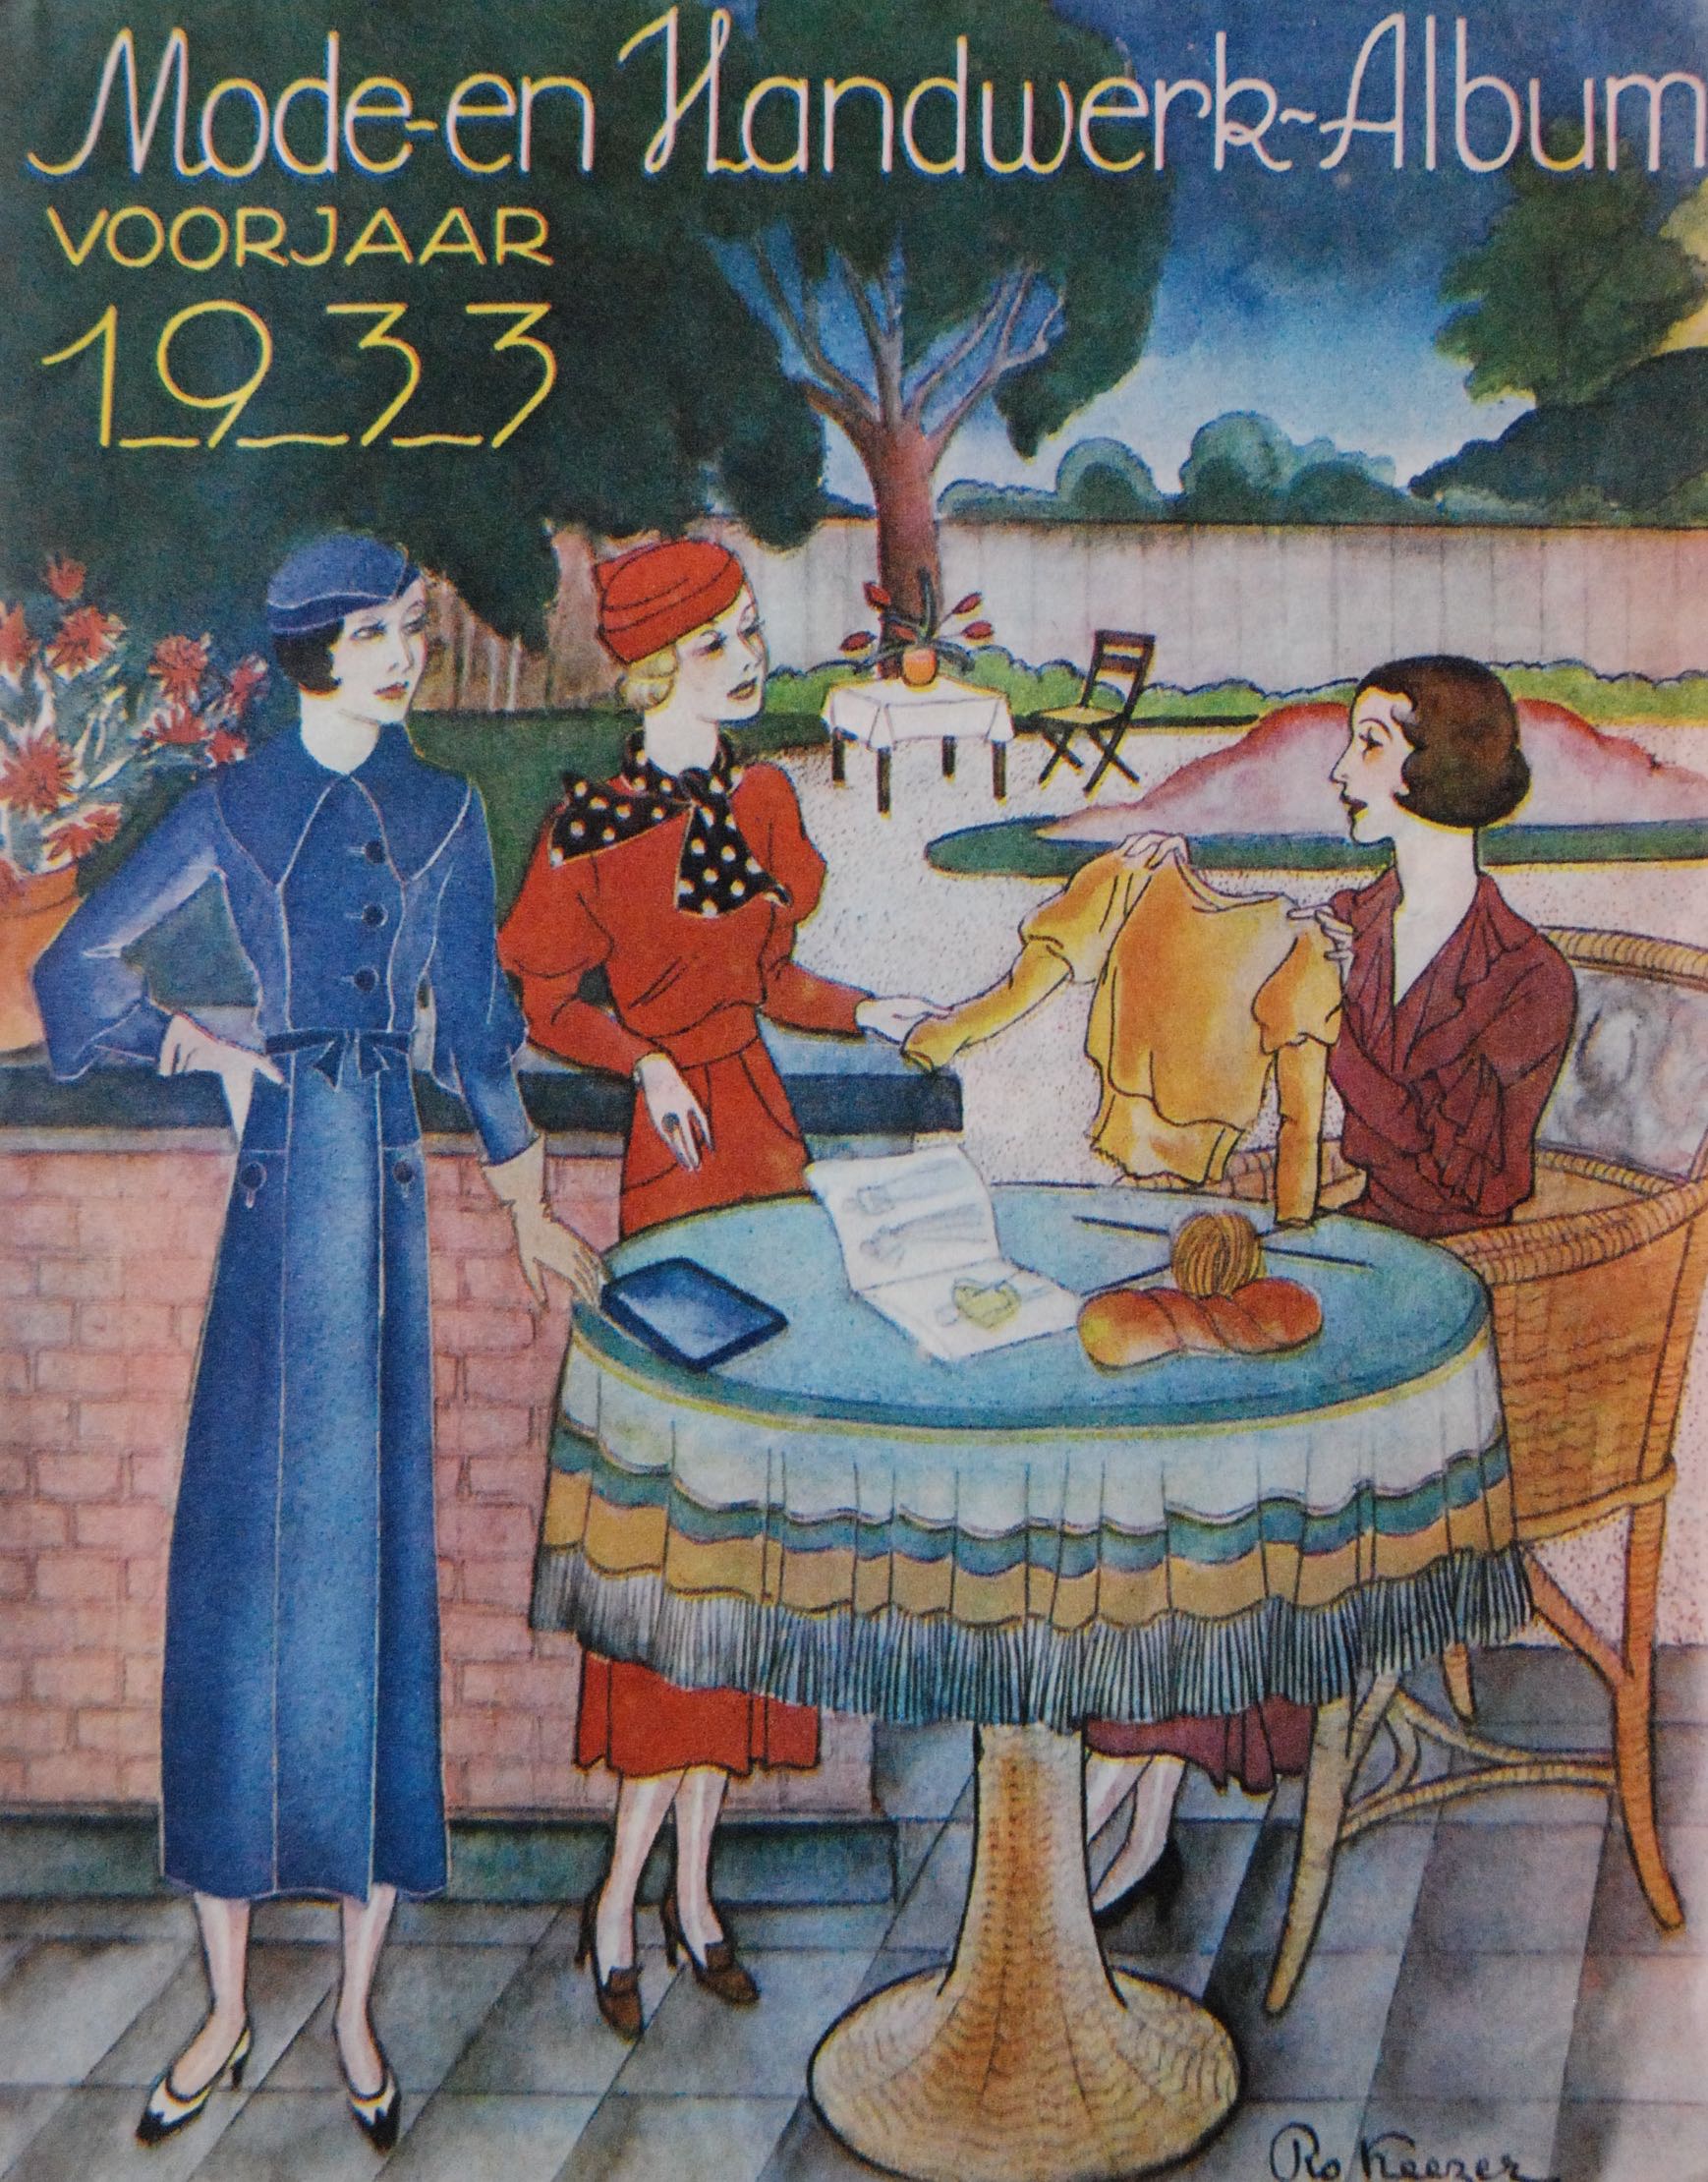 Cover van het Mode- en Handwerk-Album, voorjaar 1933.